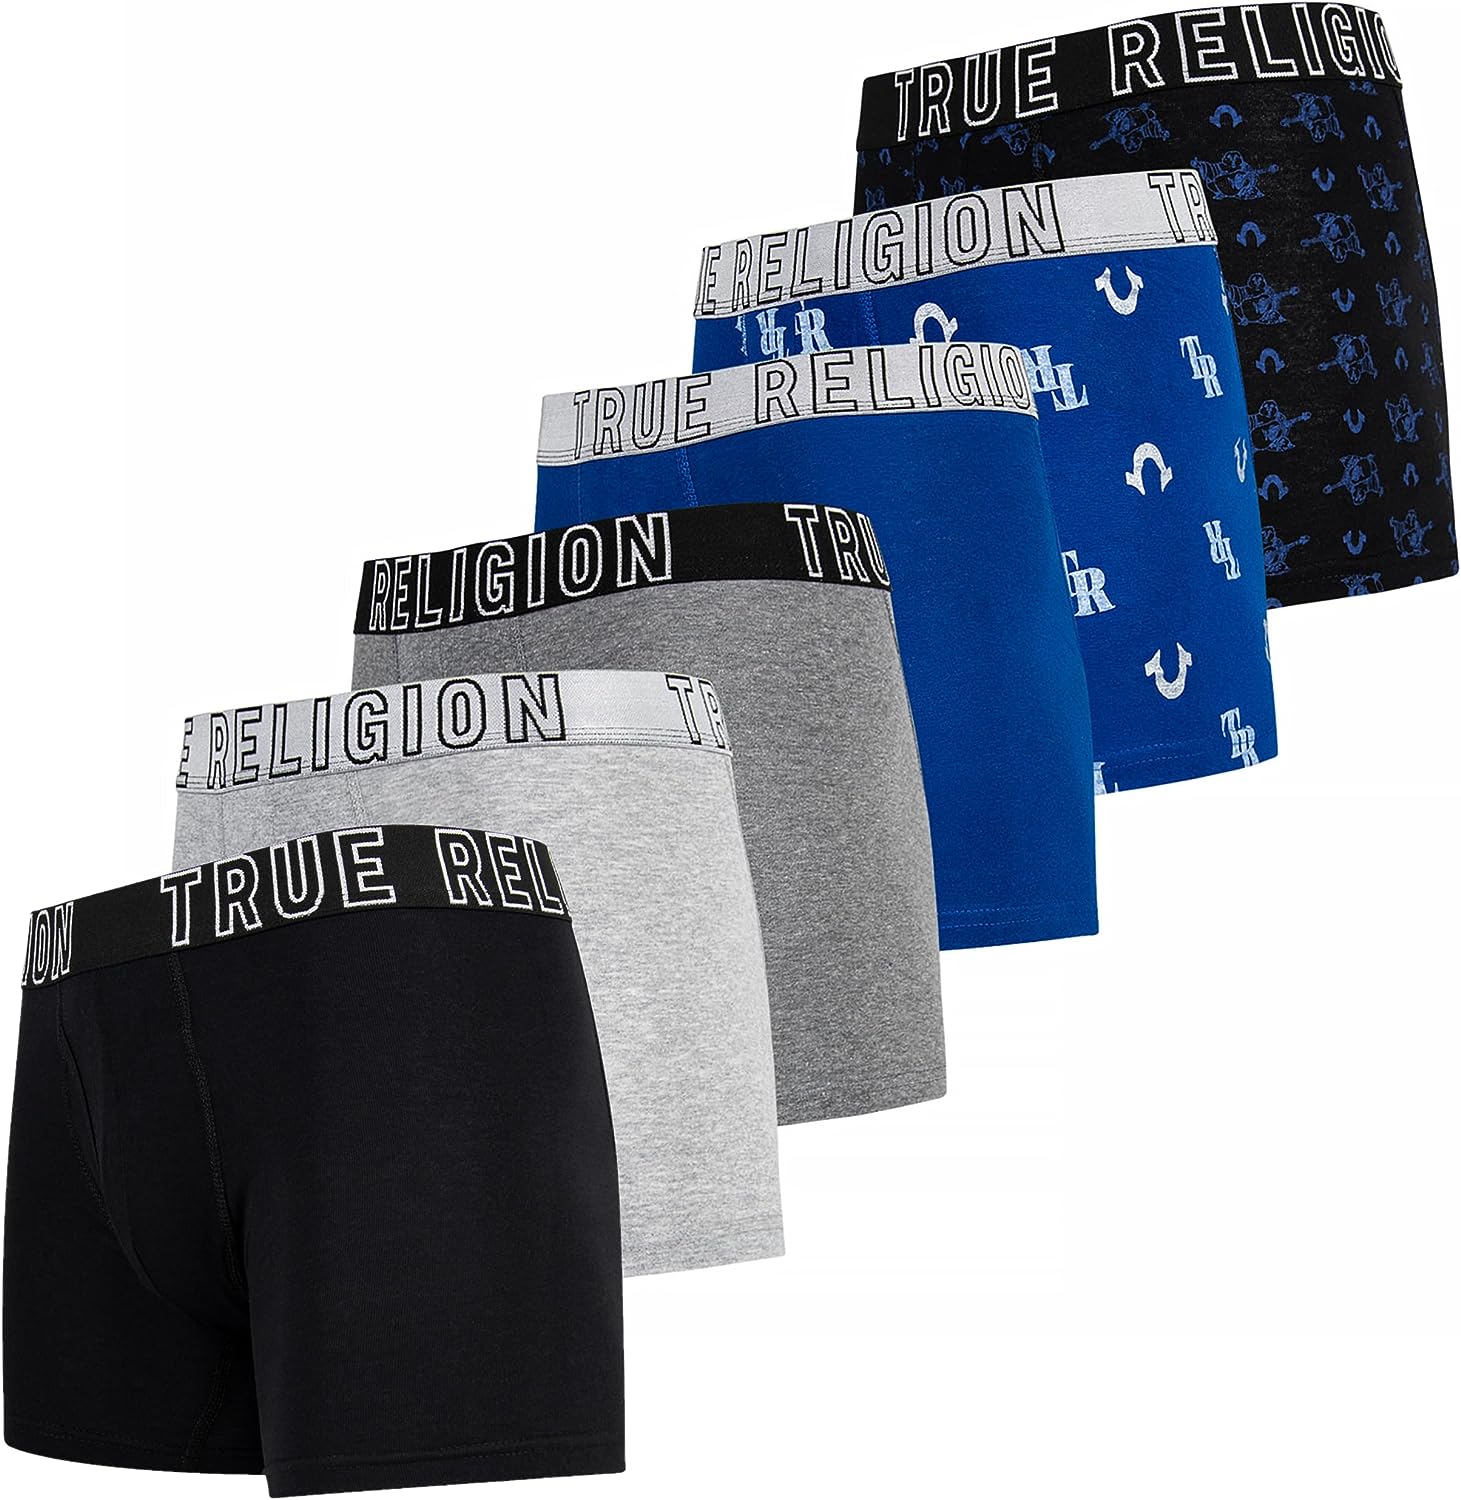 TRUE RELIGION Men Premium Cotton Stretch Boxer Briefs 3 Pack Size S M L NEW